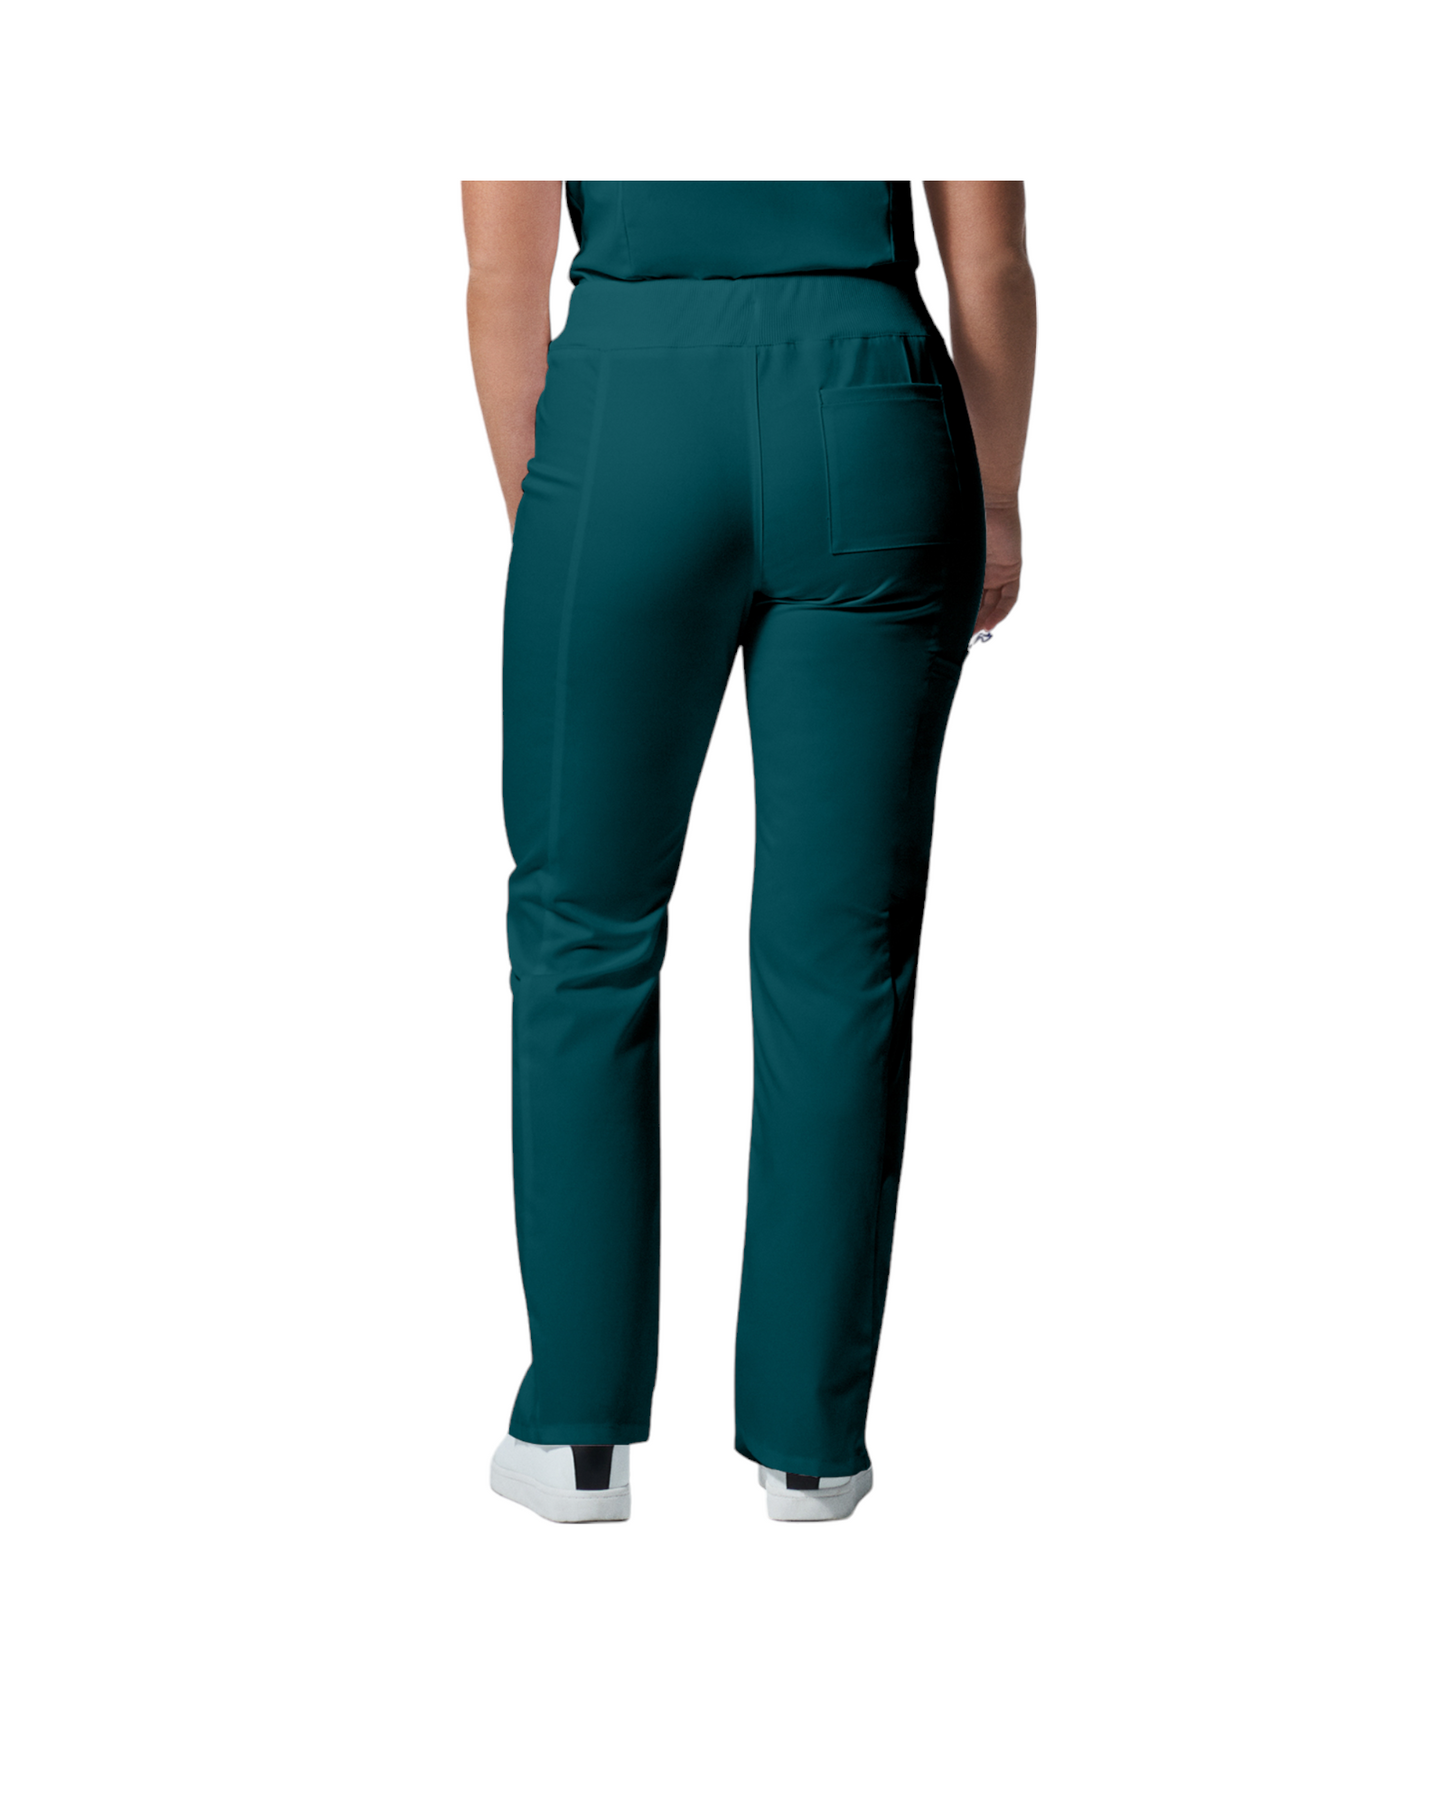 Pantalons  6 poches pour femmes Landau Proflex #LB405 dos couleur  Caraïbes